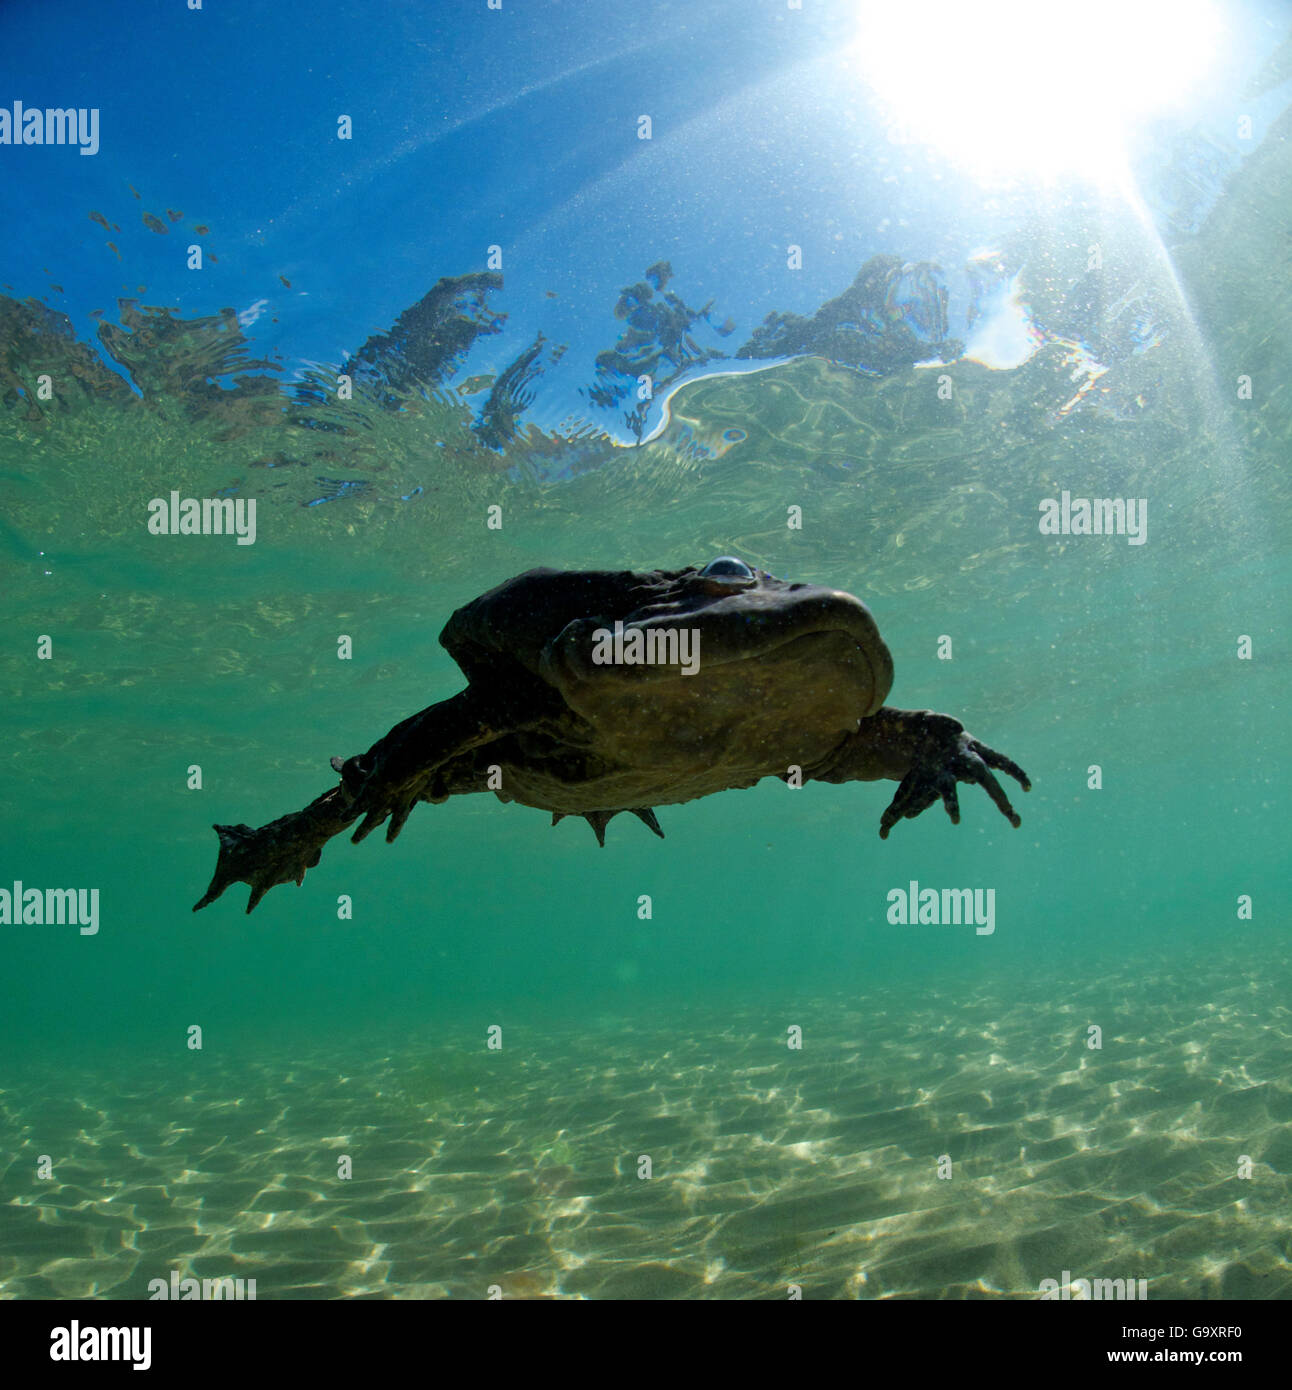 L'eau Titicaca (grenouille Telmatobius culeus) nager sous l'eau, le Lac Titicaca, en Bolivie. Espèces en danger critique d'extinction. Banque D'Images